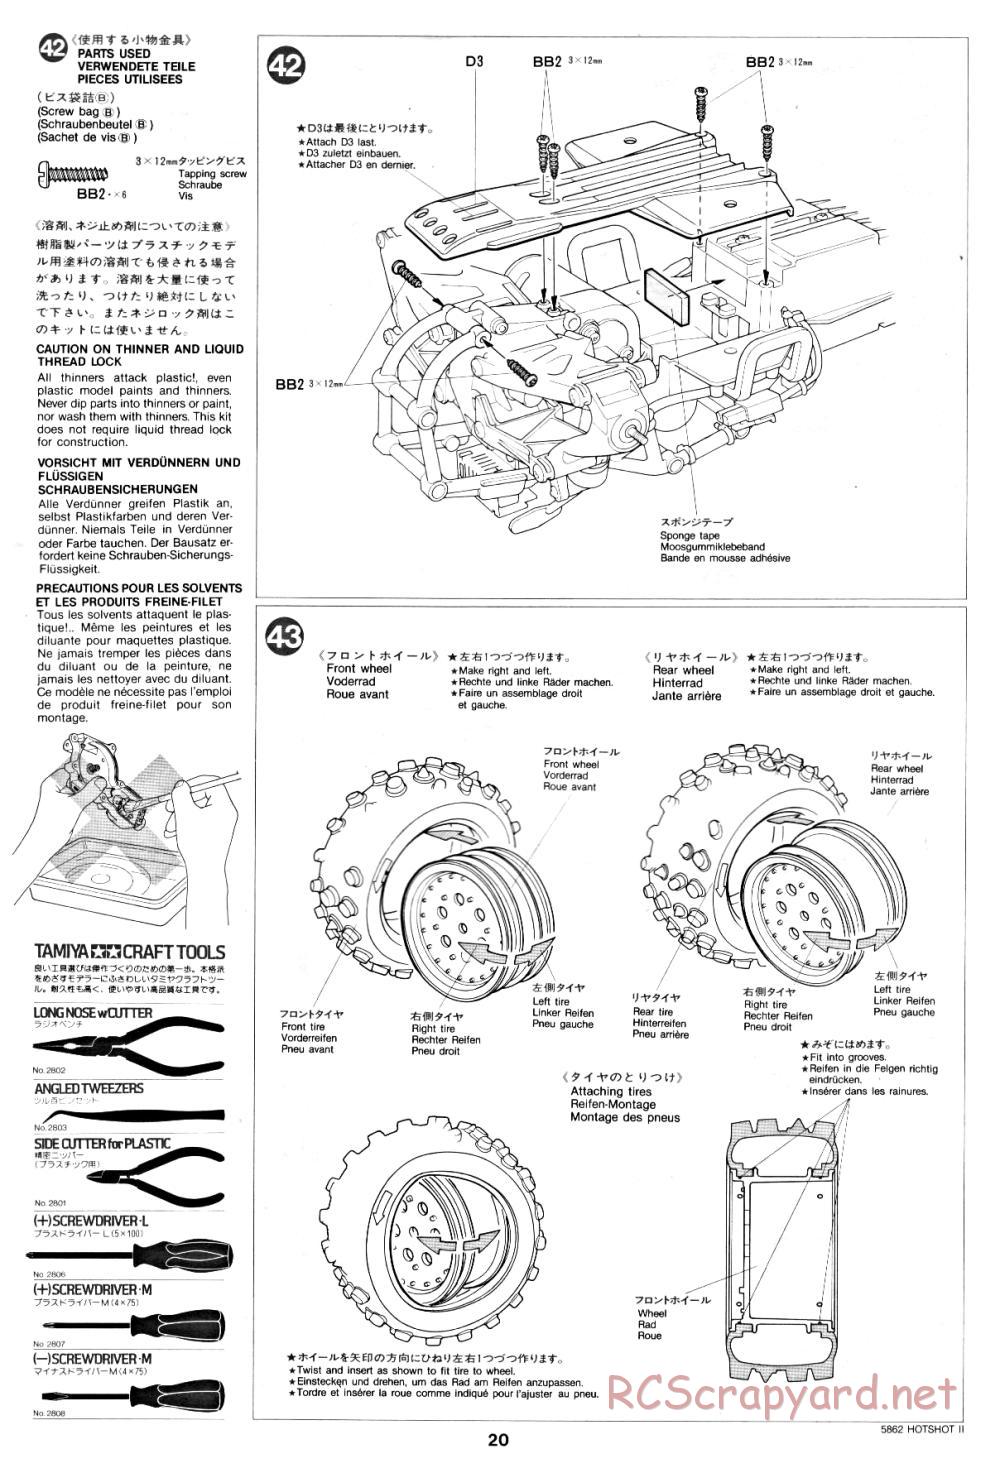 Tamiya - Hot-Shot II - 58062 - Manual - Page 20